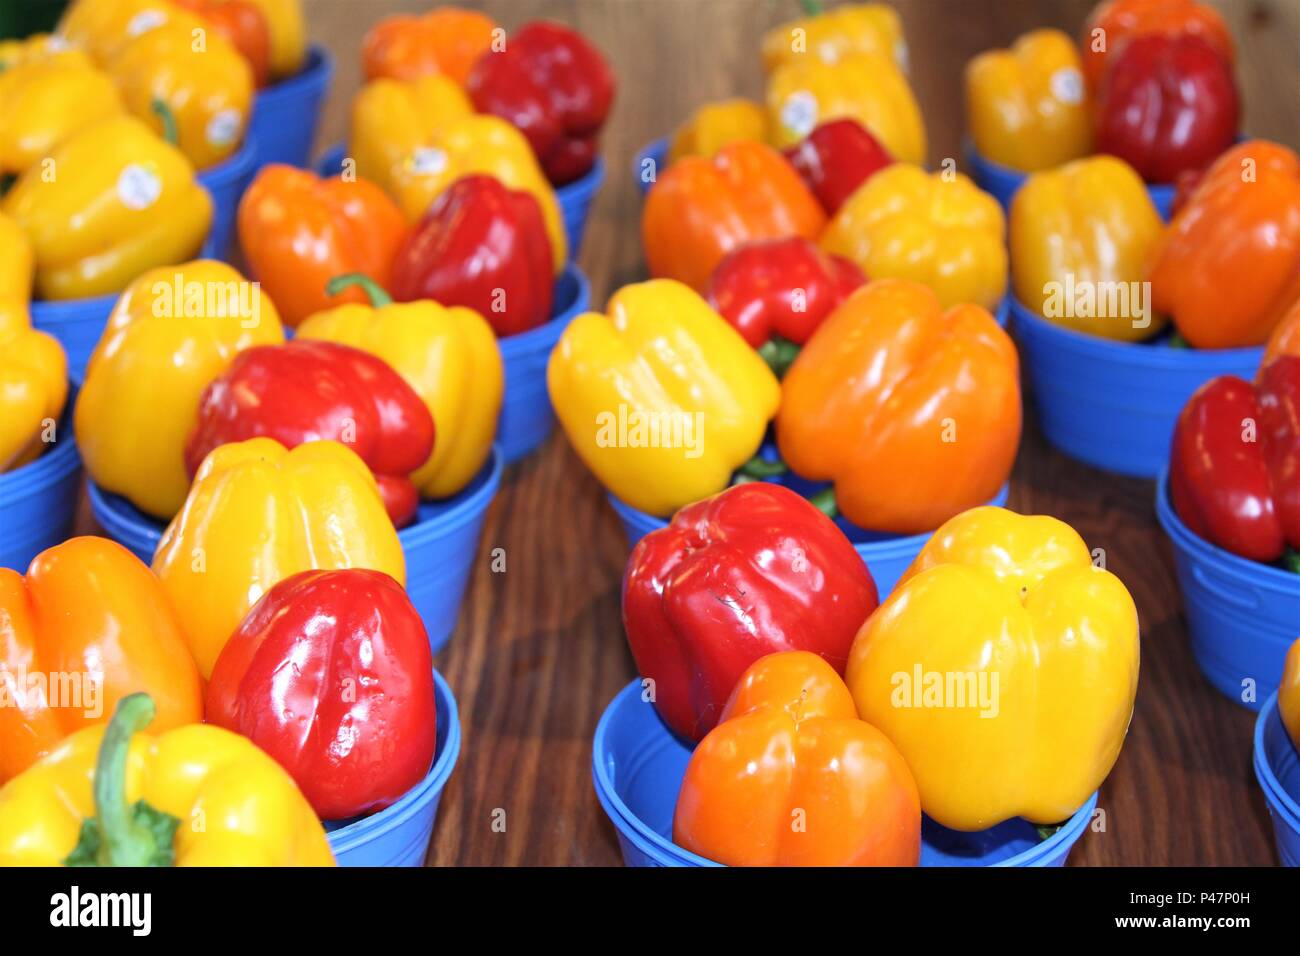 Markt Anzeige der Gelbe, orange und rote Paprika in runde Körbe Stockfoto